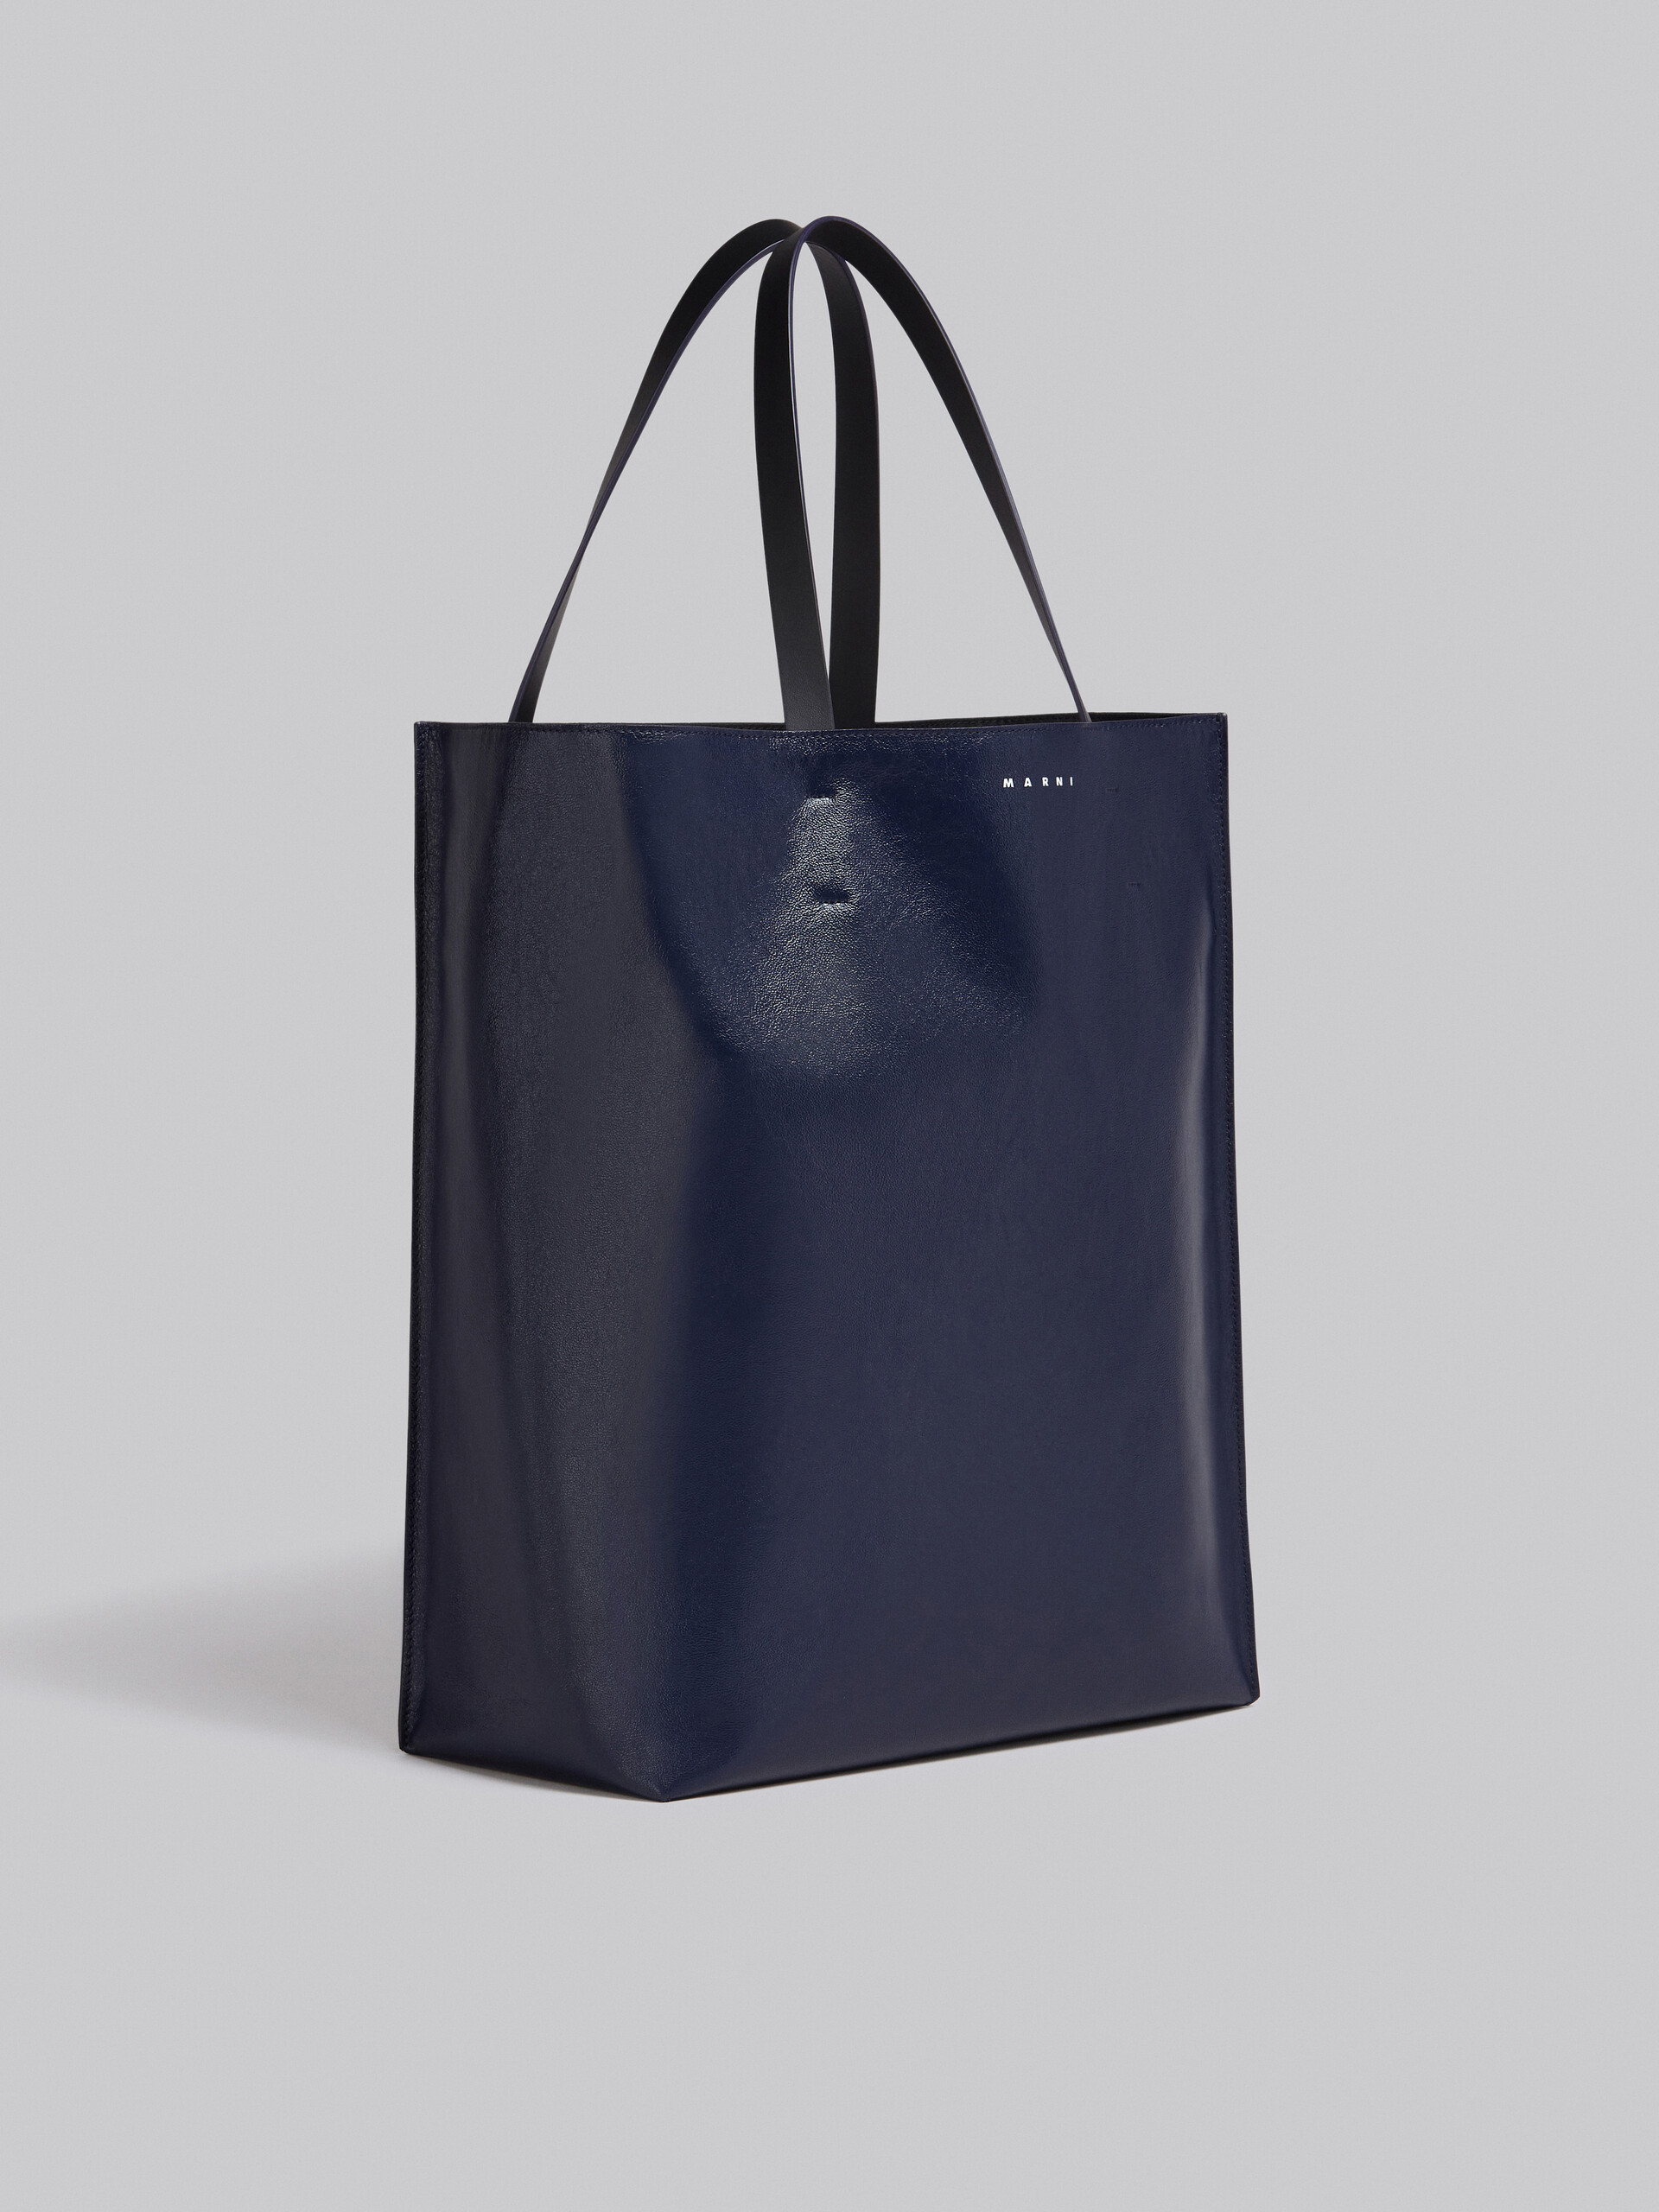 Grand sac Museo Soft en cuir noir et bleu - Sacs cabas - Image 6